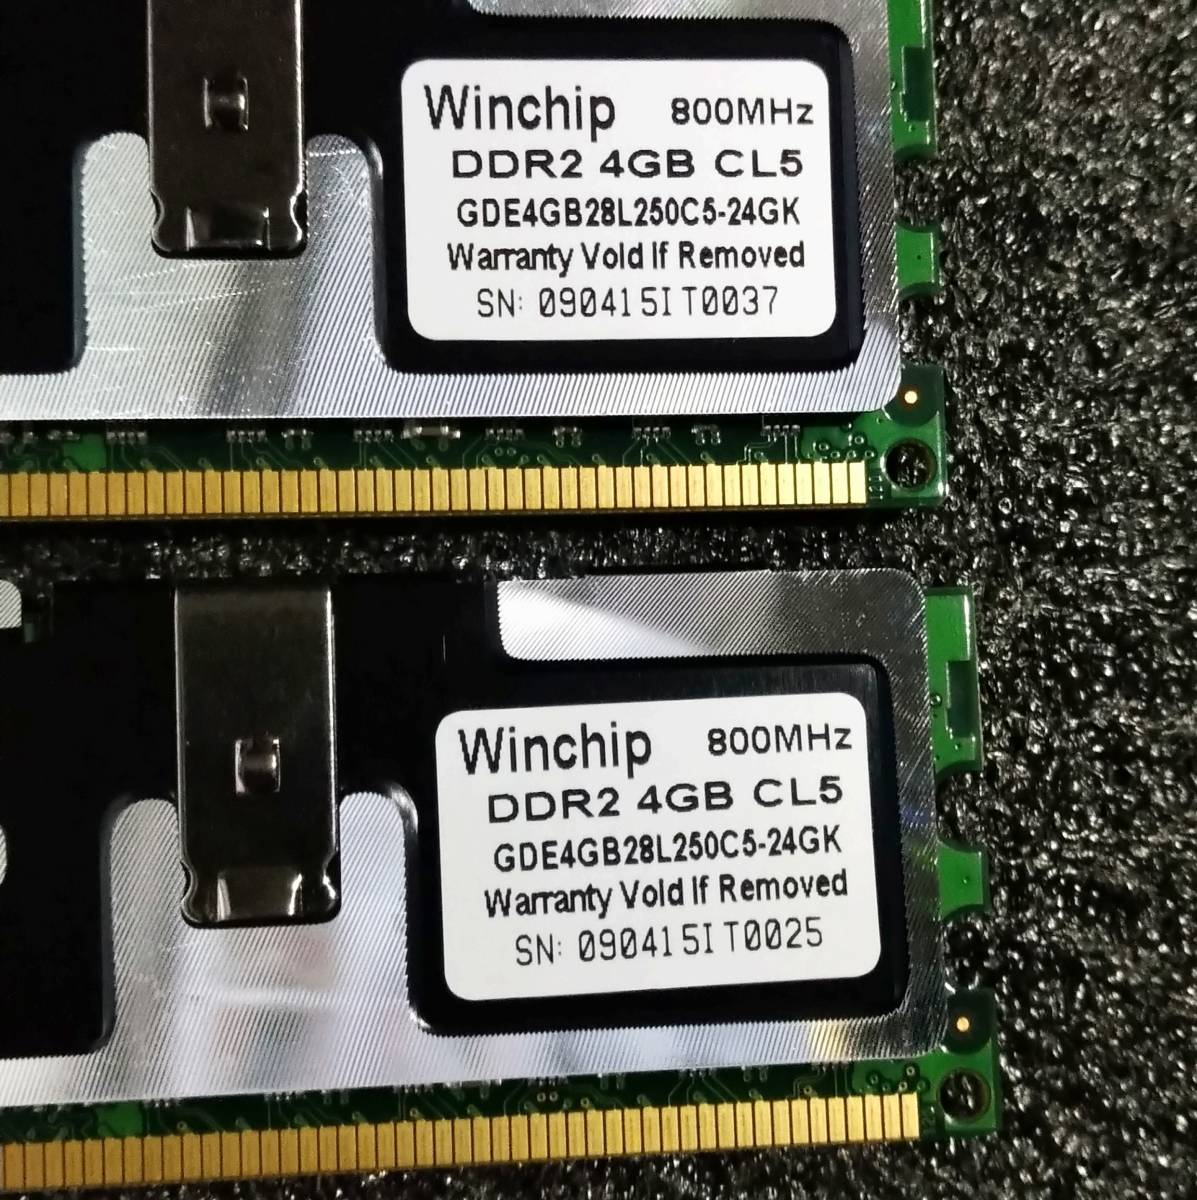 【中古】DDR2メモリ 16GB(4GB4枚組) Whinchip GDE4GB28L250C5-24GK [DDR2-800 PC2-6400]_画像6